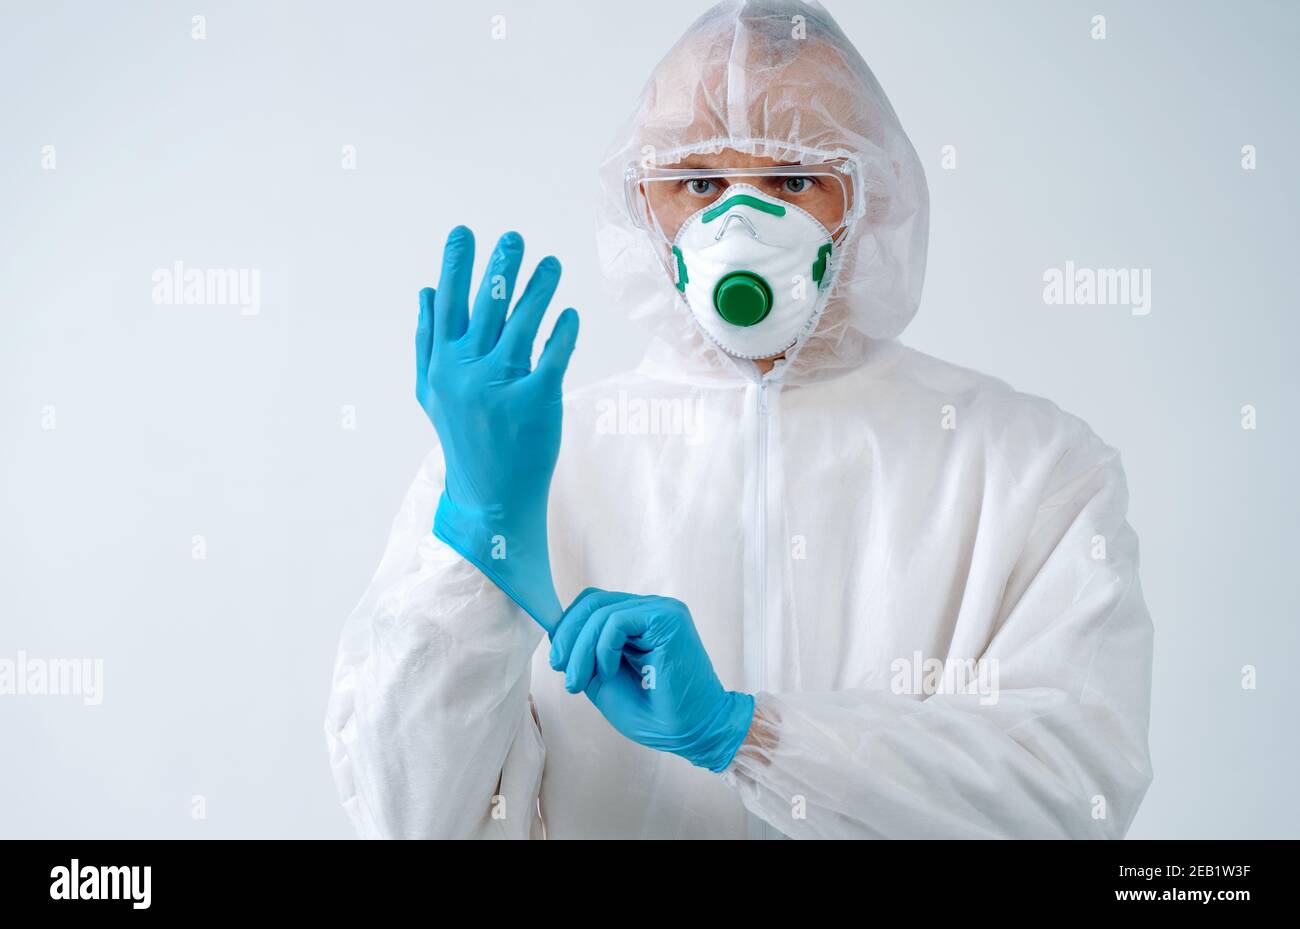 Operatore sanitario in tuta protettiva e maschera medica indossa i guanti. Concetto di assistenza sanitaria. Foto Stock